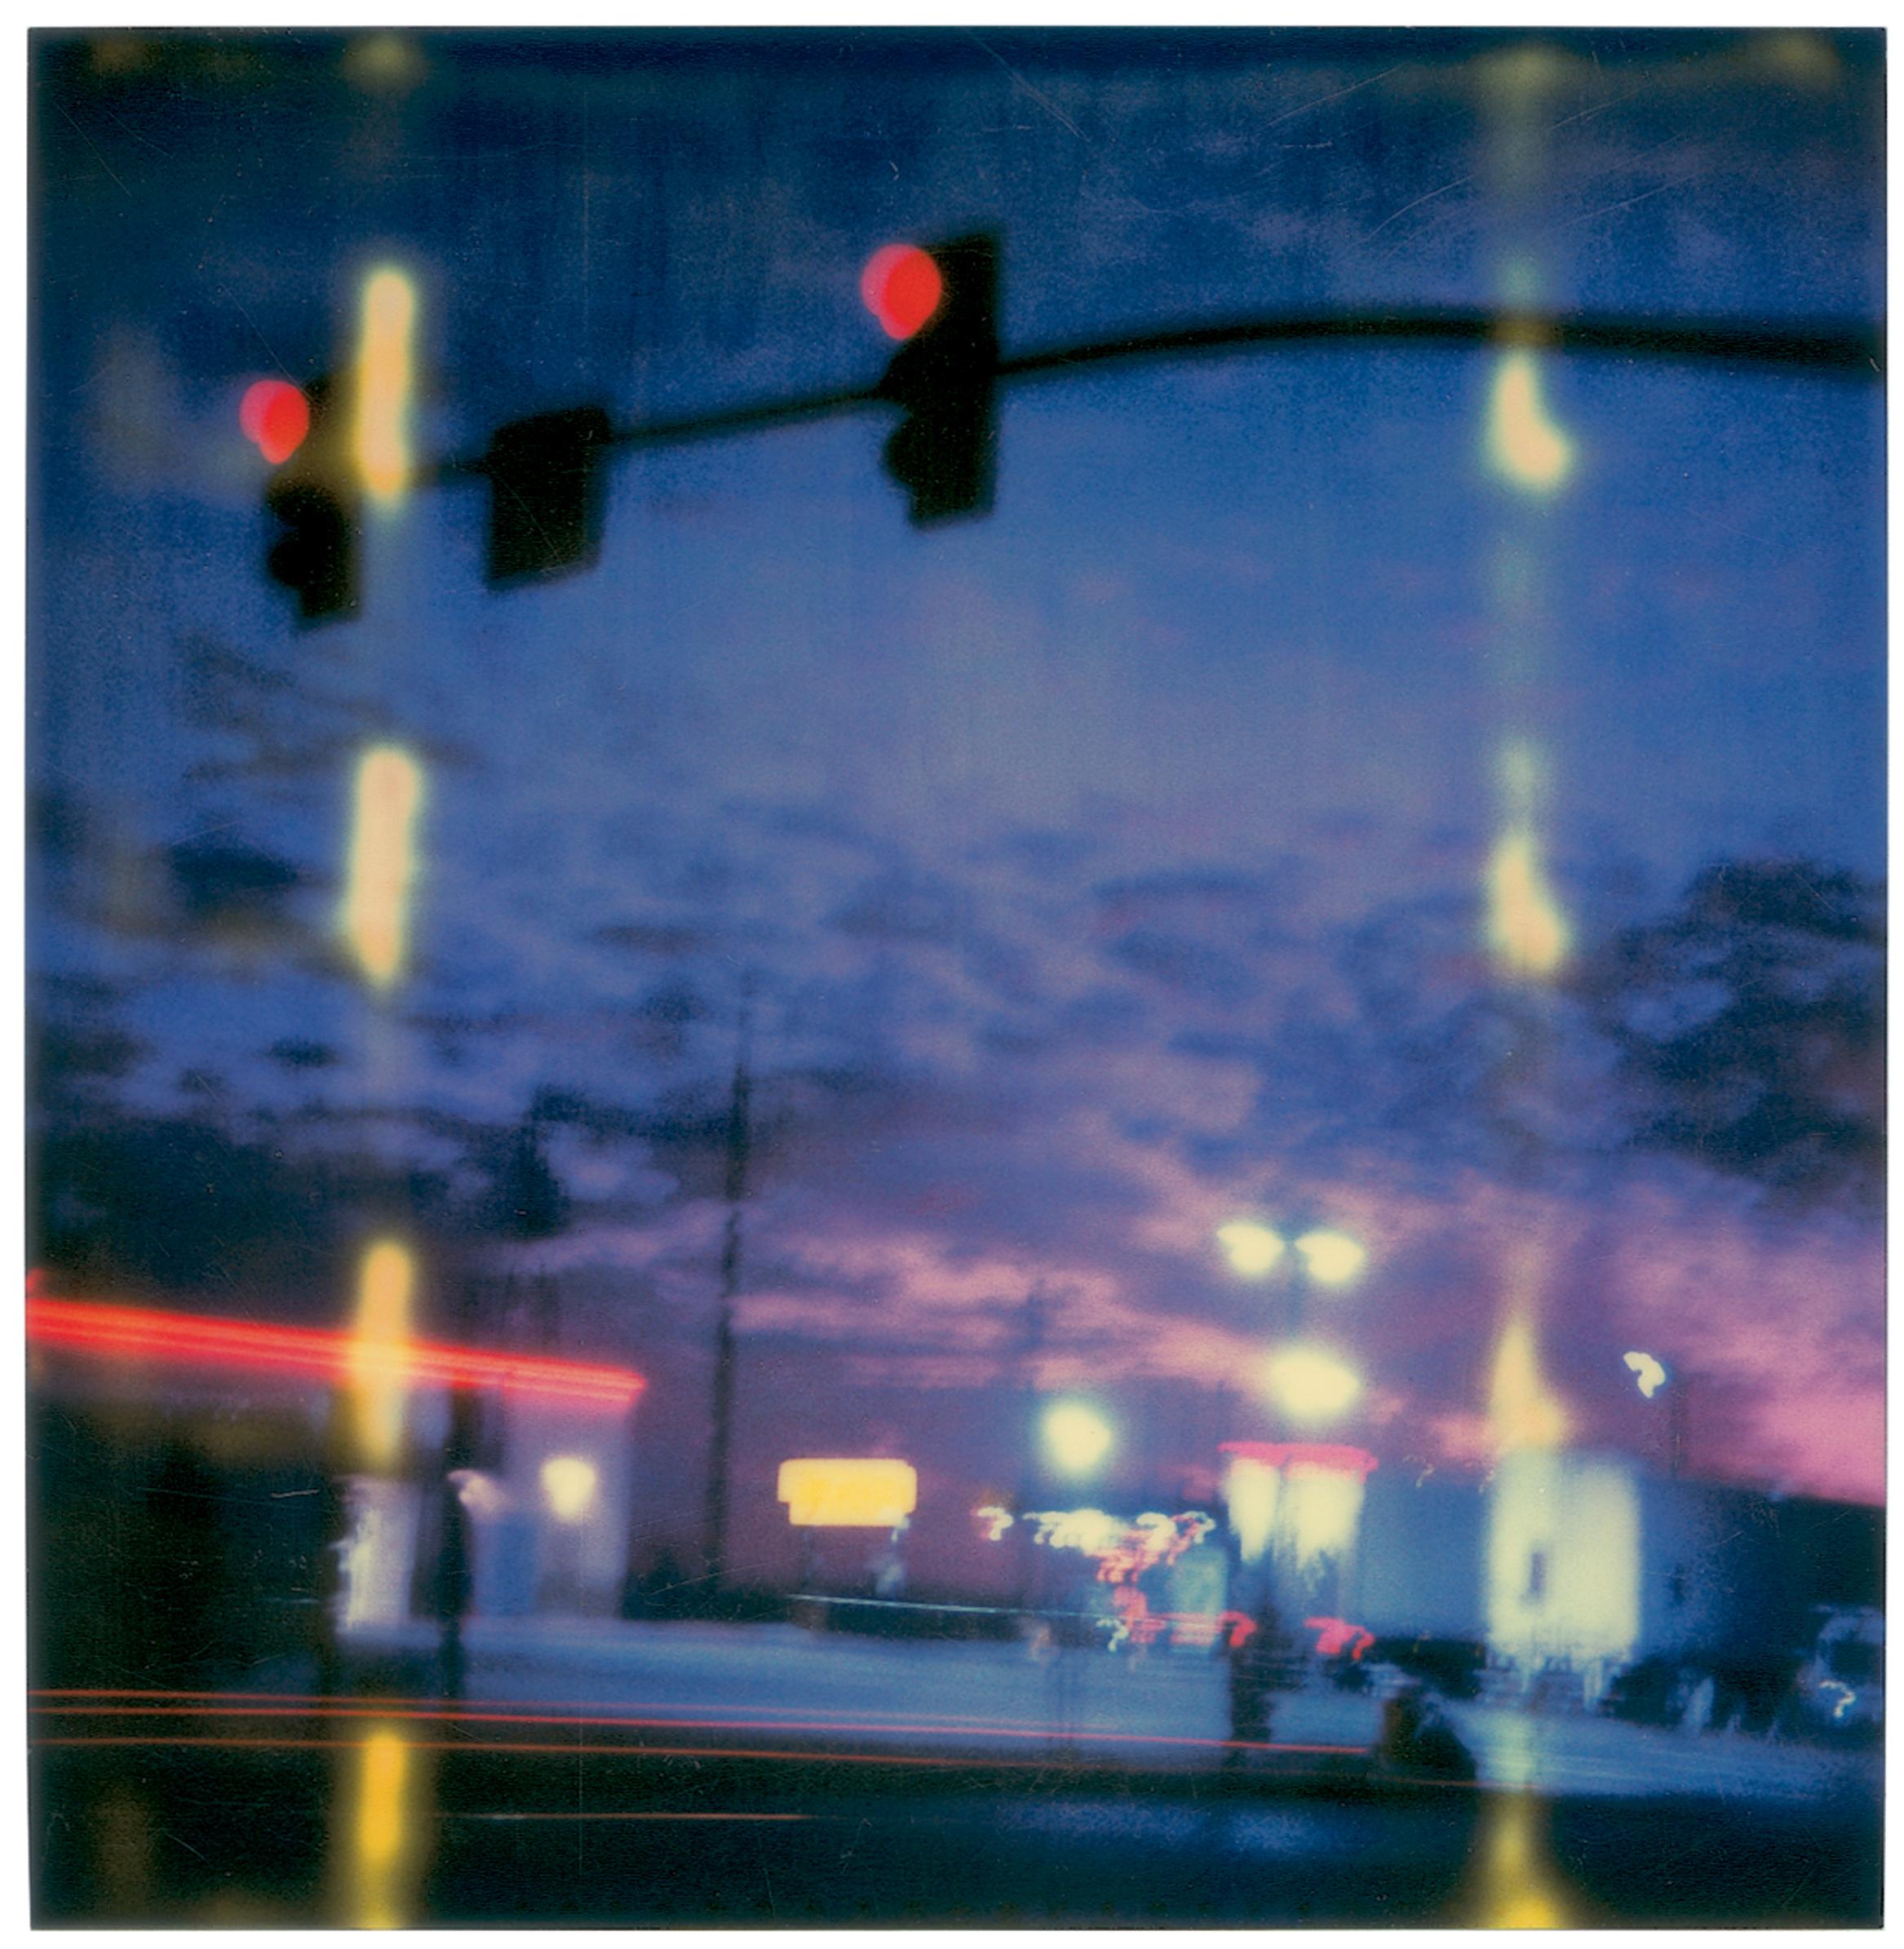 Four Corners Junction (Last Picture Show) - 5 pièces, analogique, Polaroid - Photograph de Stefanie Schneider